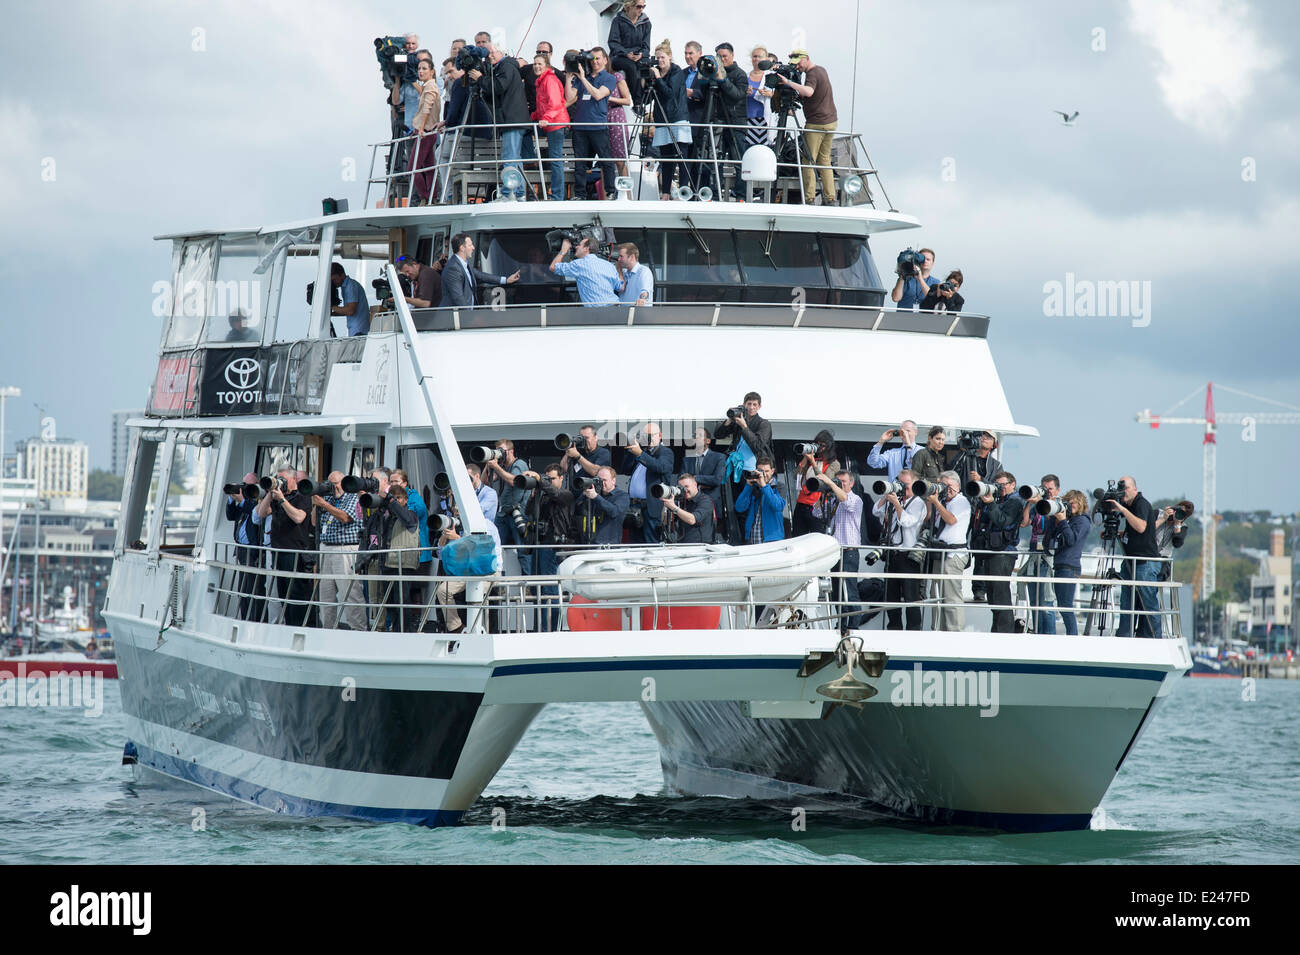 Fotografen und Fernsehteams drängen sich ein Touristenboot Katamaran für einen Aussichtspunkt während der Herzog und die Herzogin von Cambridge Besuch Stockfoto